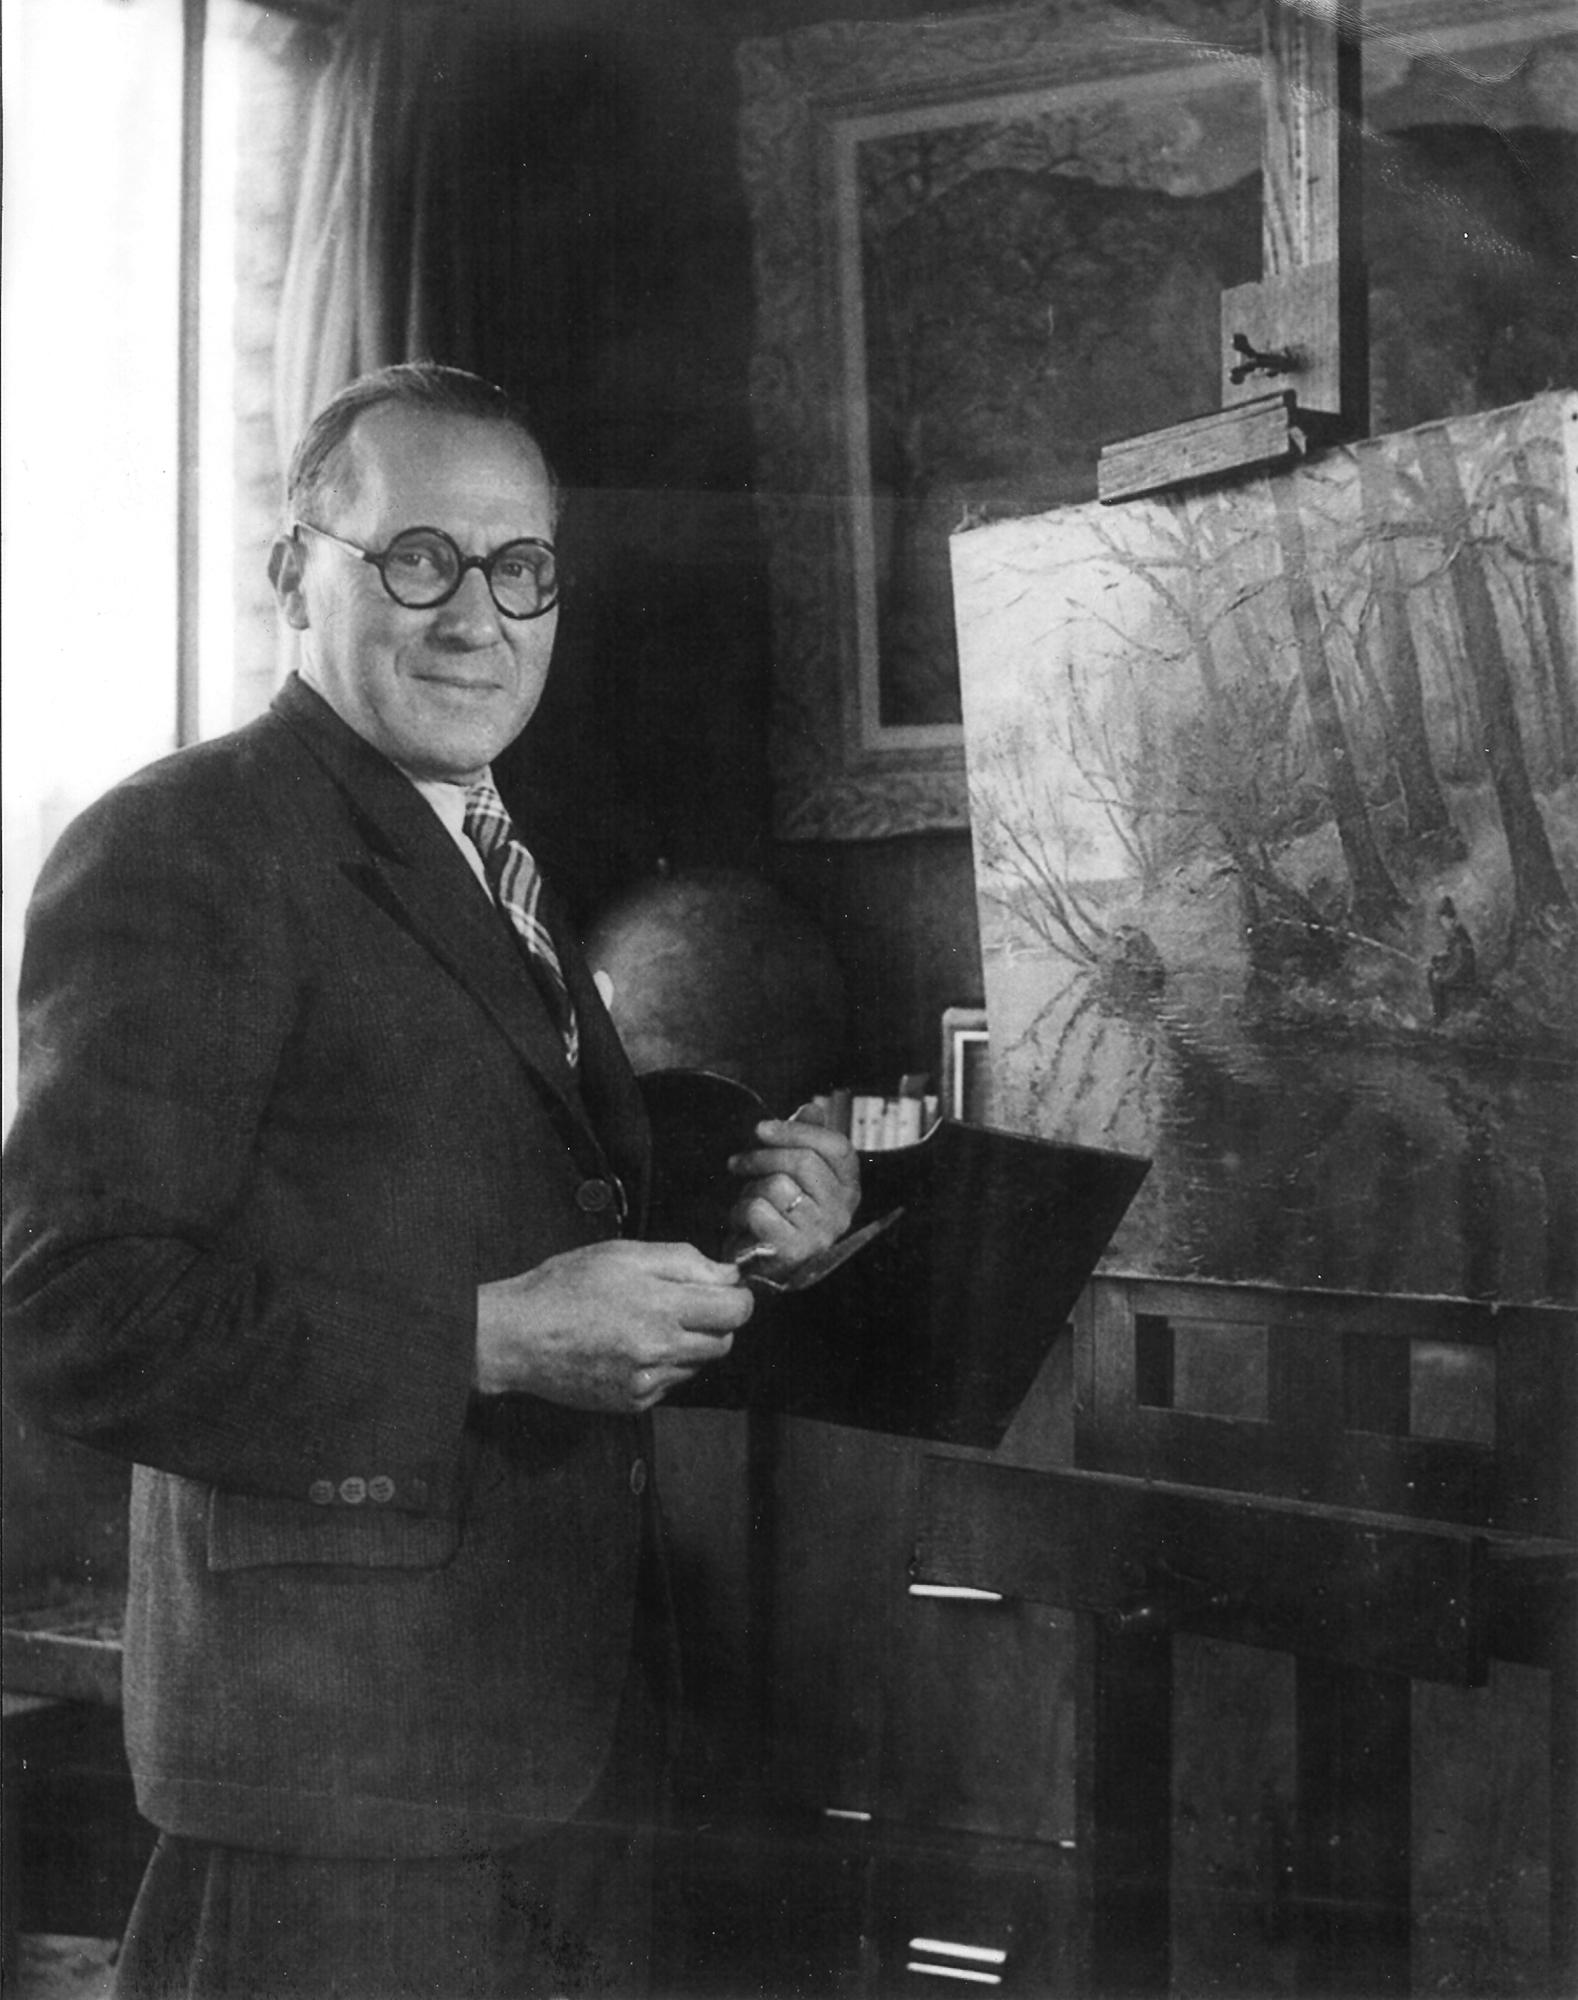 La Suisse Normande en Automne von Paulémile Pissarro (1884-1972)
Aquarell und Bleistift auf Papier
28 x 20 cm (11 x 7 ⁷/₈ Zoll)
Signiert und bezeichnet unten links, Paulémile - Pissarro - automne-
Ausgeführt um 1935

Dieses Aquarell wurde im Herbst